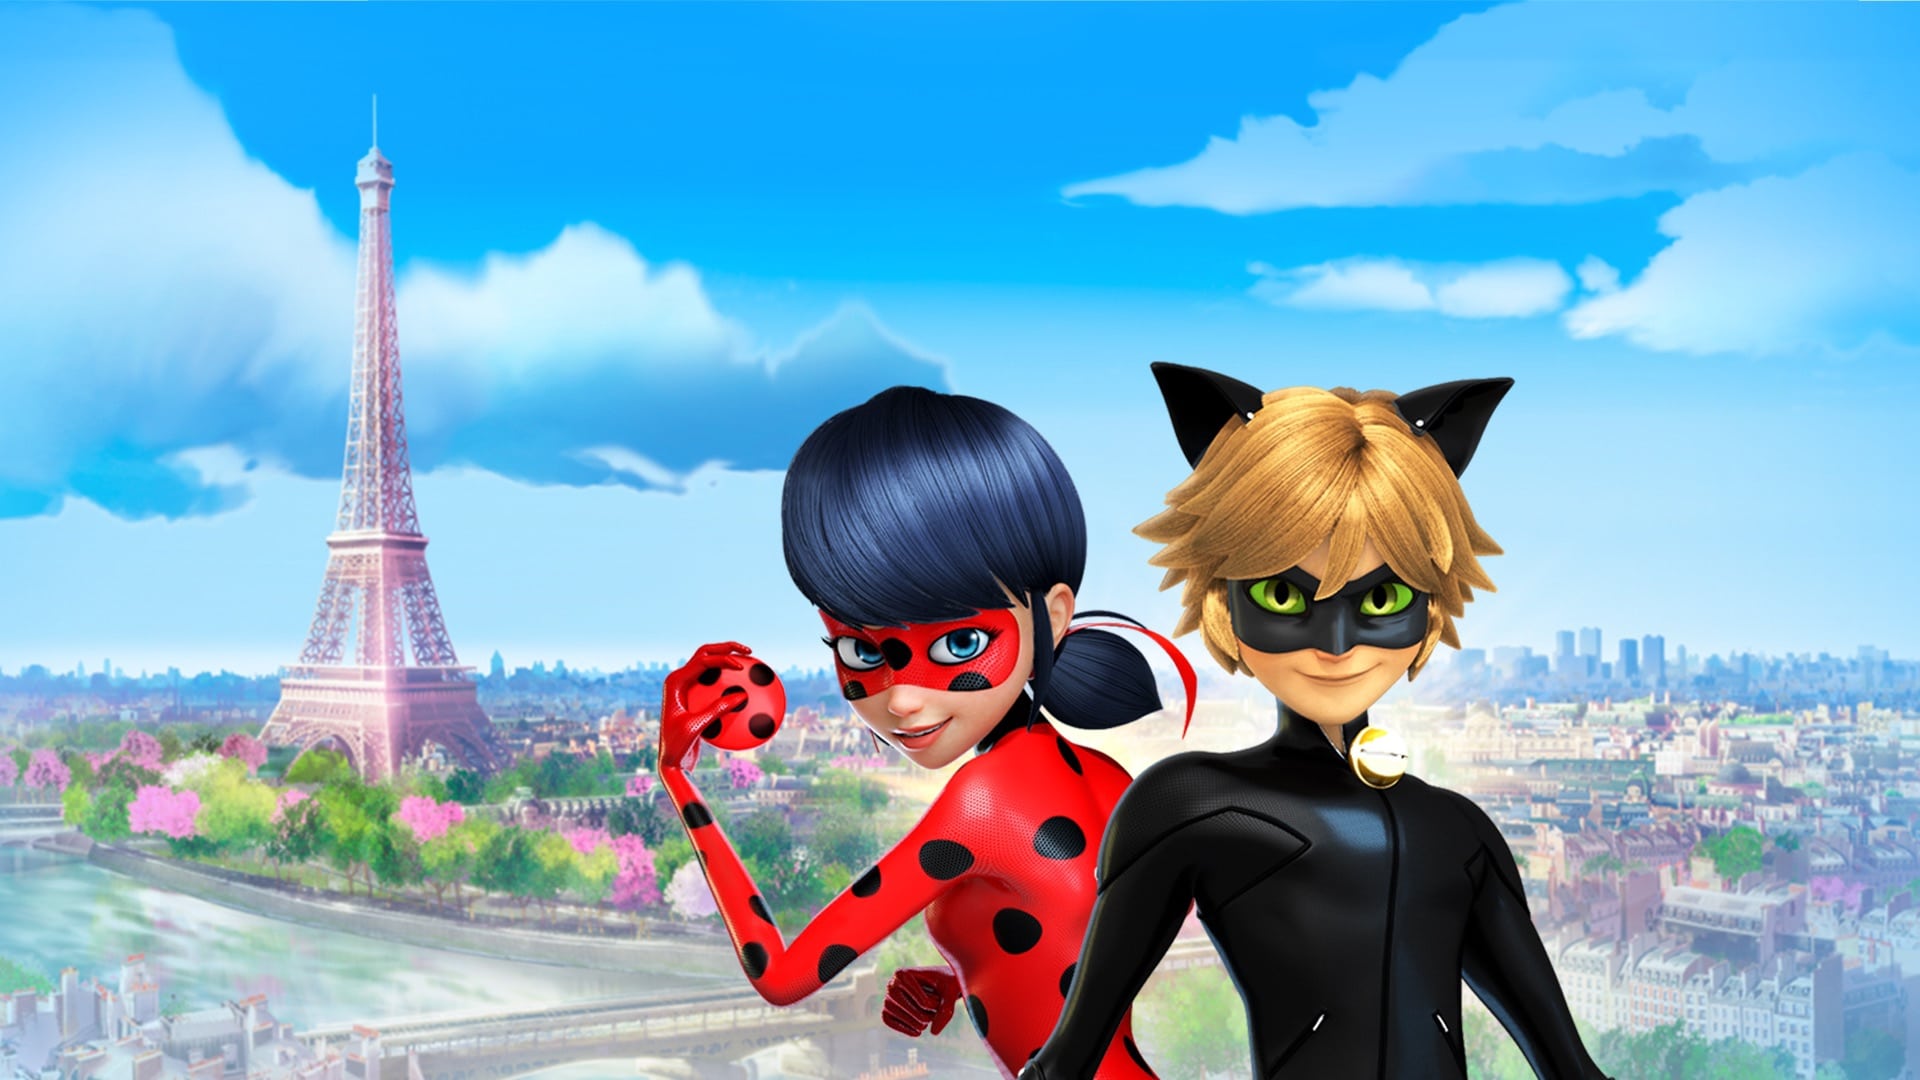 Miraculous - Le storie di Ladybug e Chat Noir